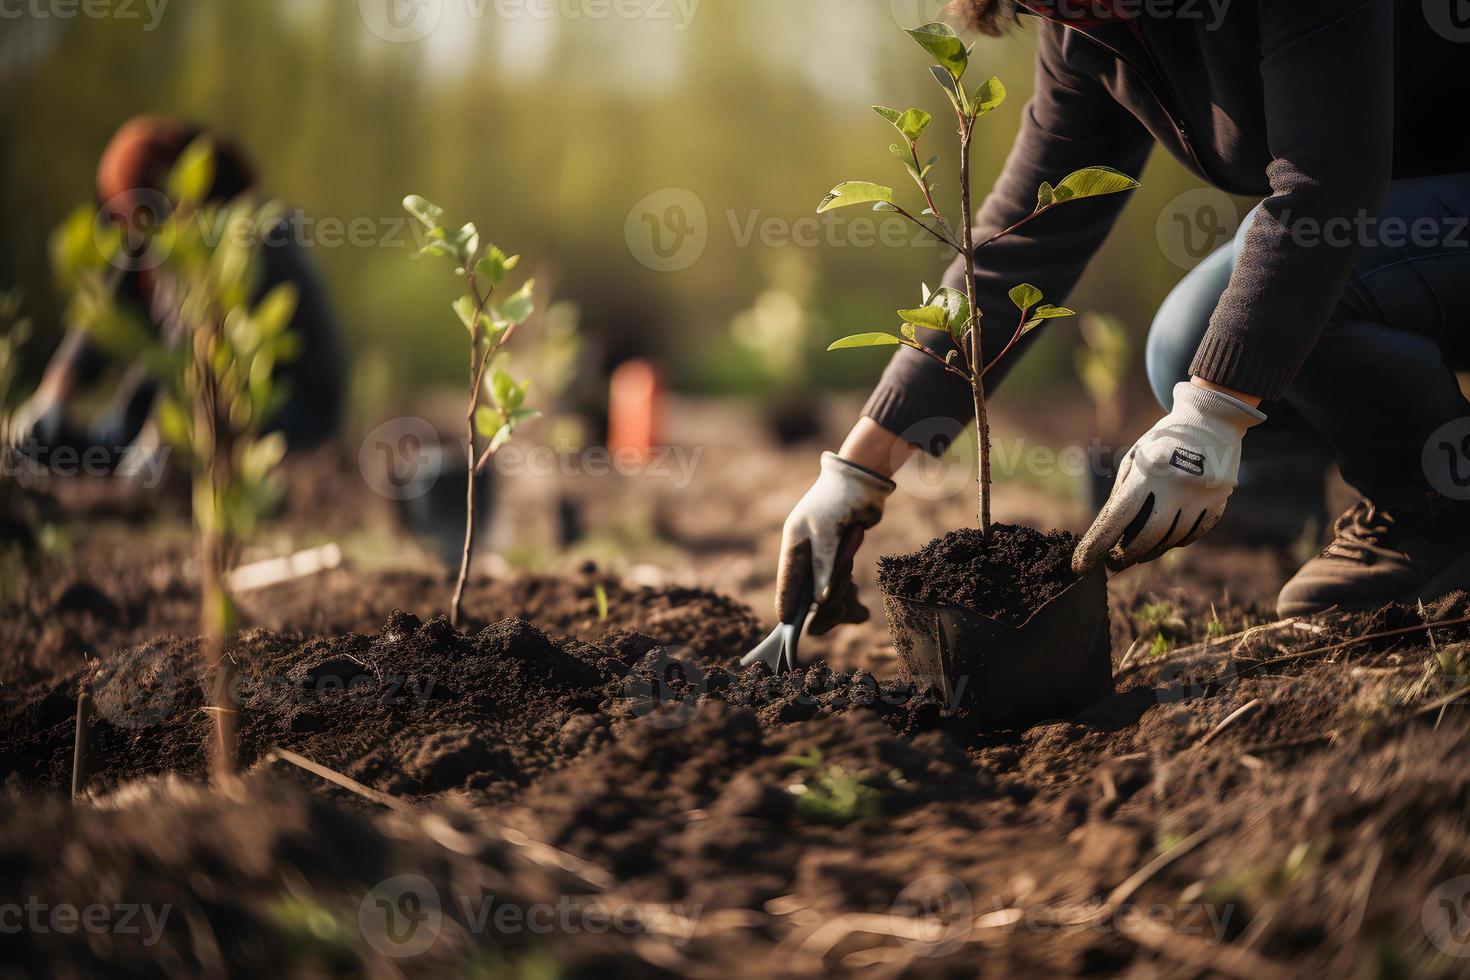 aanplant bomen voor een duurzame toekomst. gemeenschap tuin en milieu behoud - bevorderen leefgebied restauratie en gemeenschap verloving Aan aarde dag foto